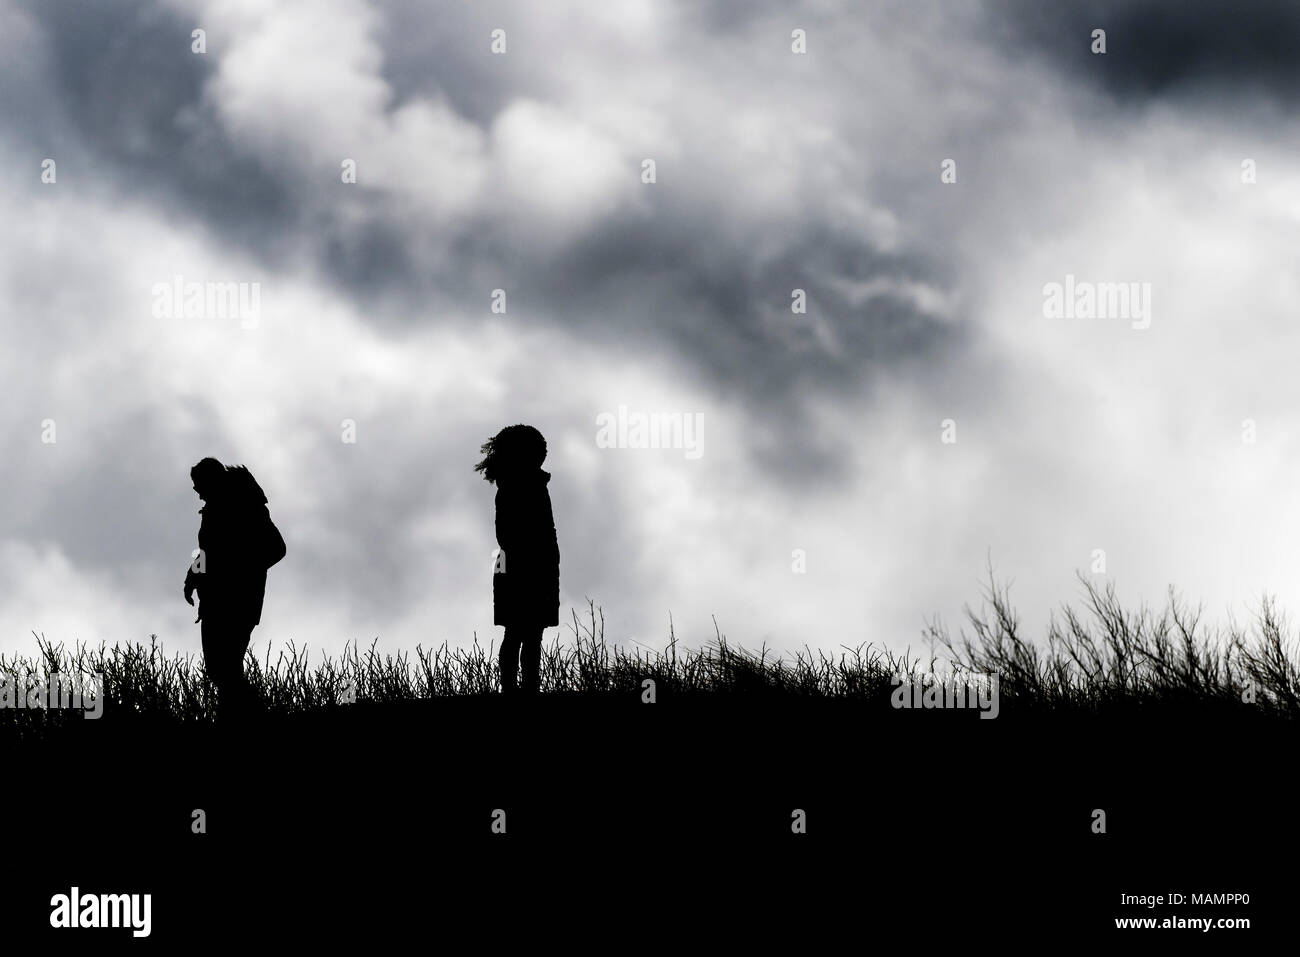 La silhouette de personnes debout contre un ciel nuageux. Banque D'Images